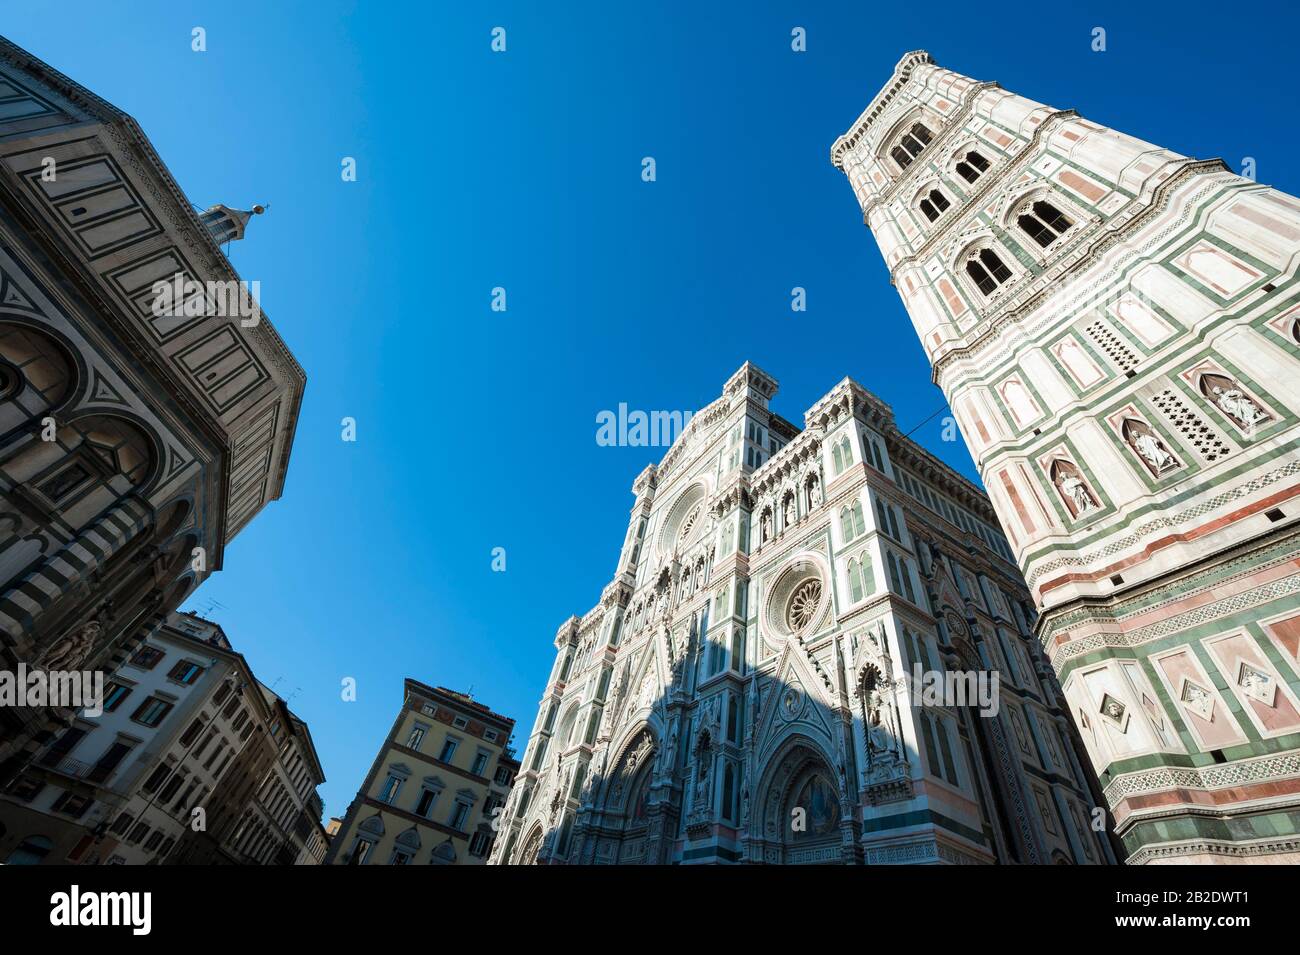 Dramatischer Chiaroscuro-Blick auf die Piazza del Duomo mit dem Portal und dem Turm der Kathedrale gegen den hellblauen Himmel in Florenz, Italien Stockfoto